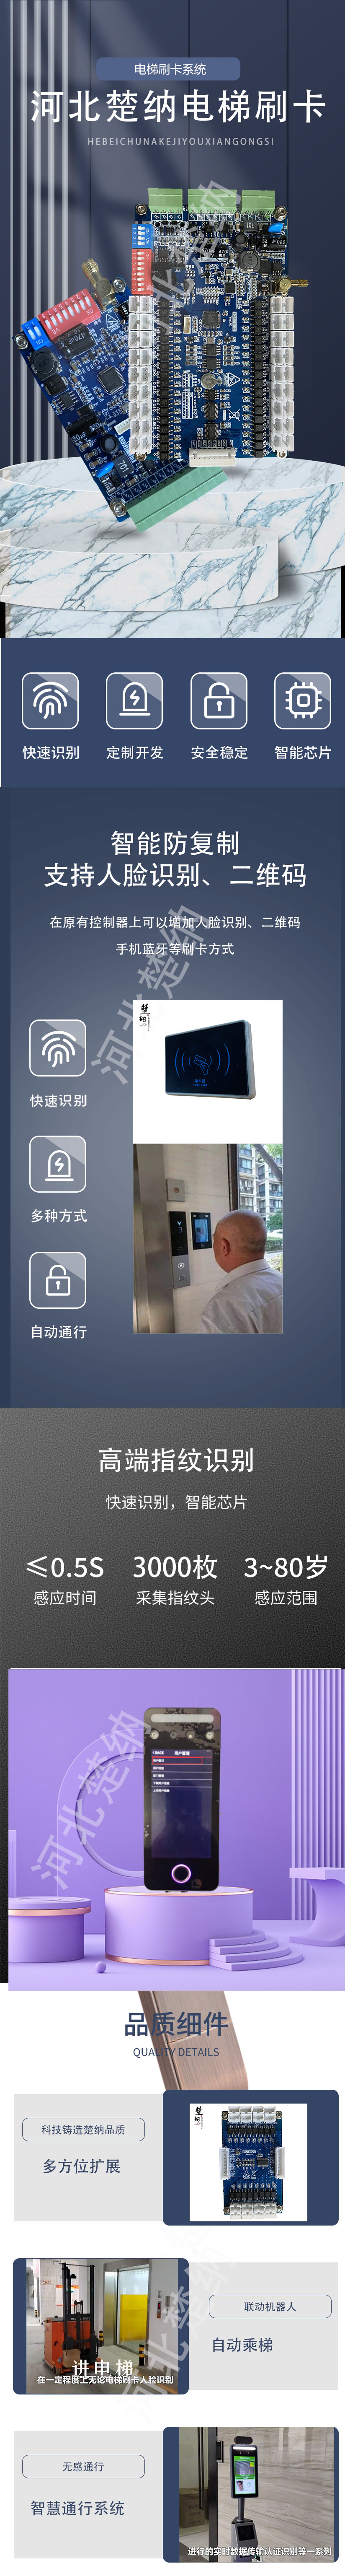 河北楚纳电梯刷卡 (2).jpg